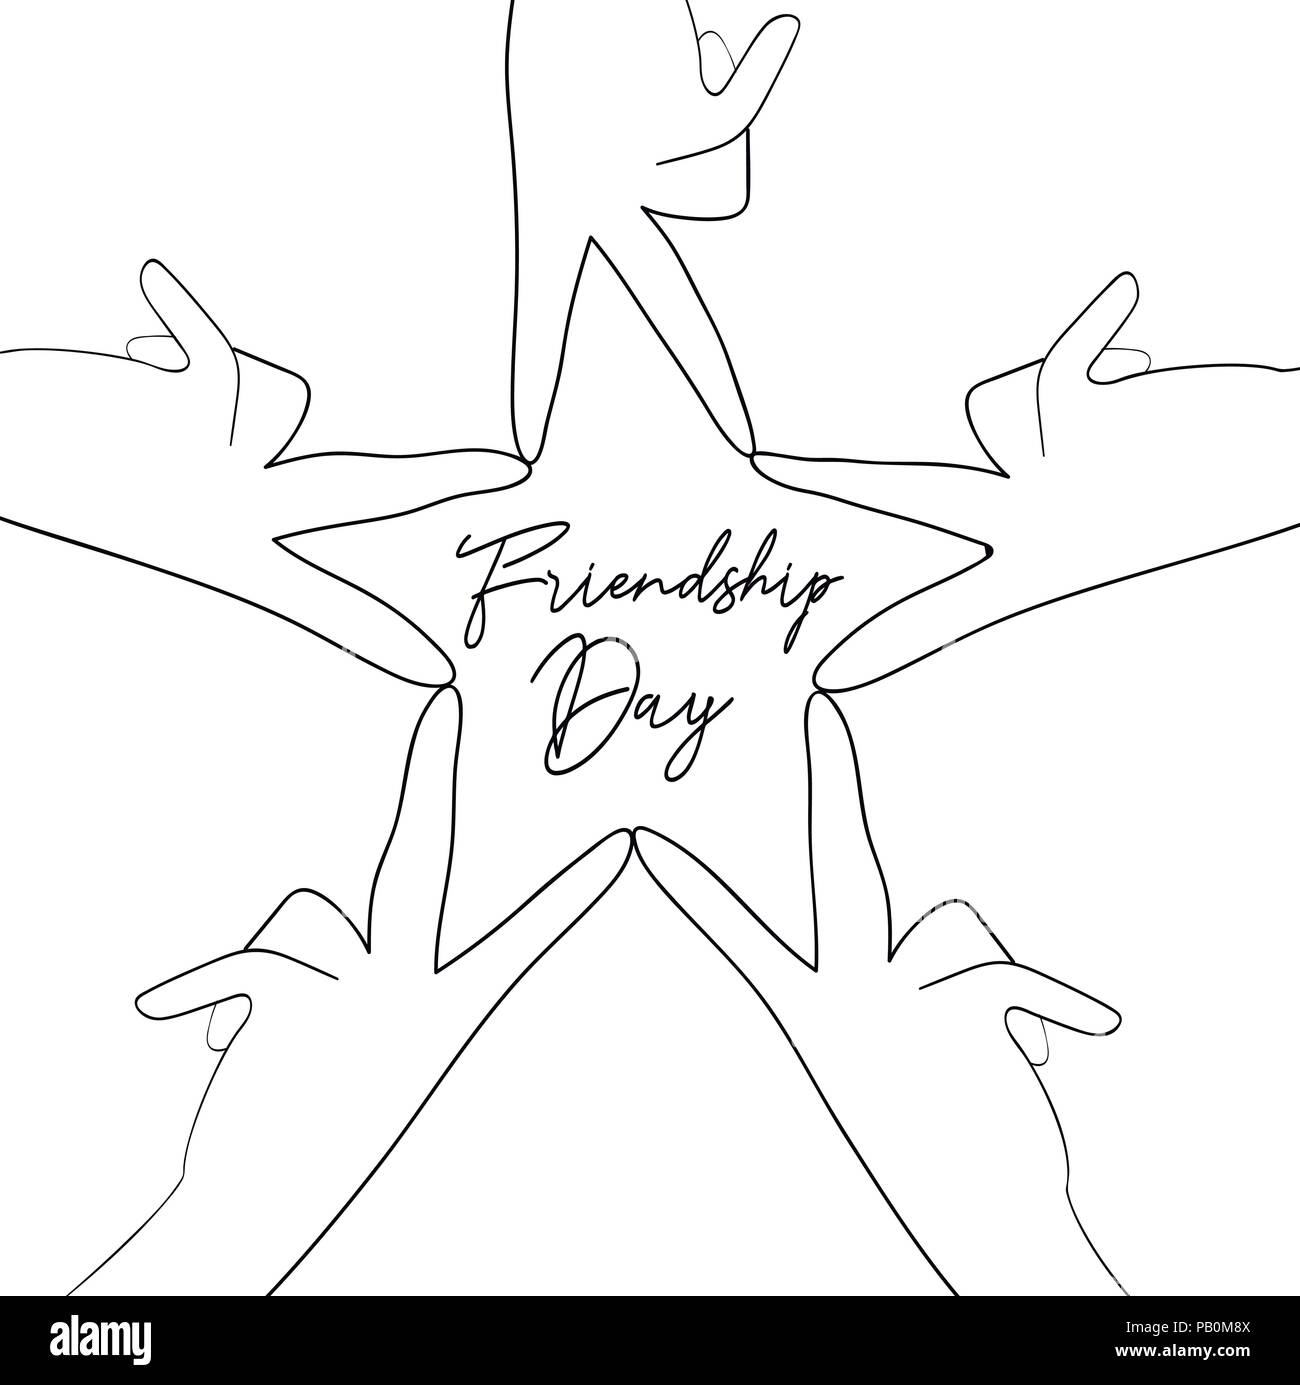 La Journée de l'amitié heureuse illustration de carte de vœux de groupe d'amis de mains en forme d'étoile style dessiné à la main avec texte célébration citation. Vecteur EPS10. Illustration de Vecteur